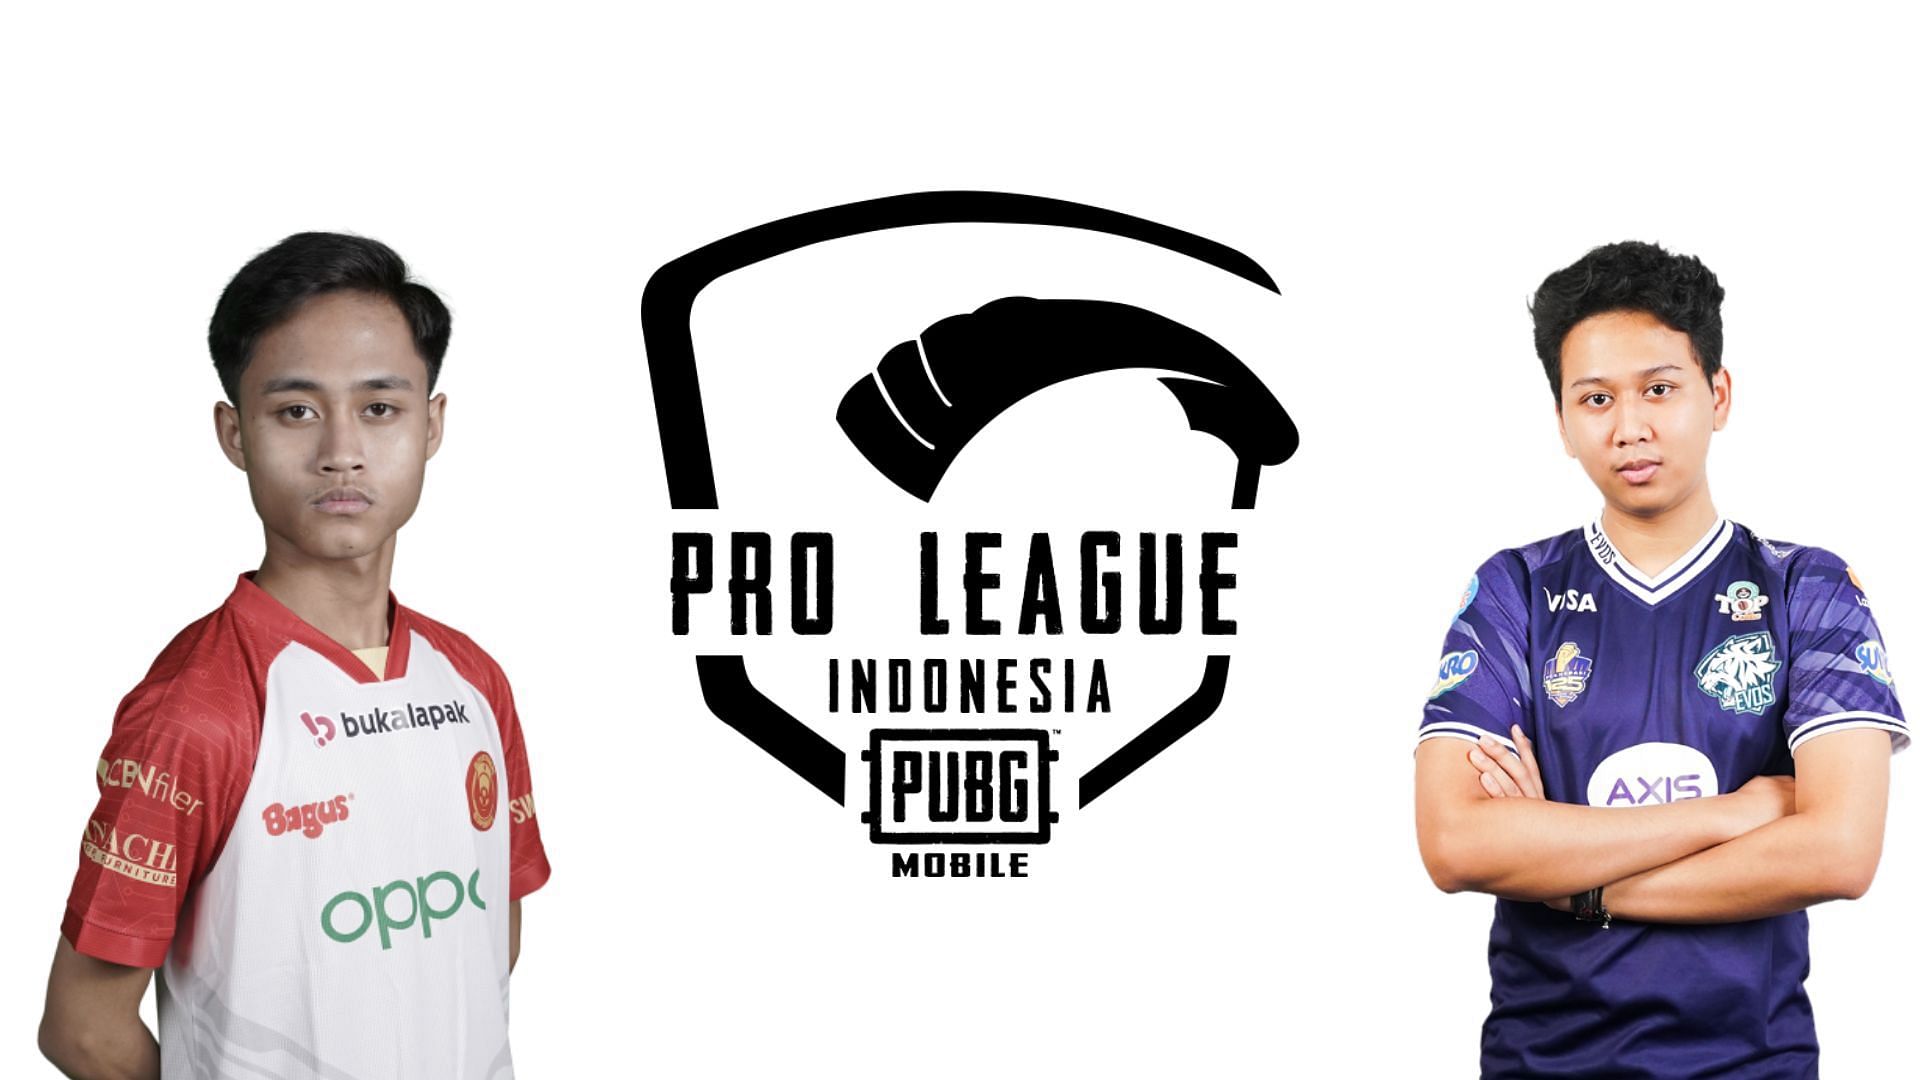 PMPL Indonesia Fall Finals starts on August 26 (Image via Sportskeeda)